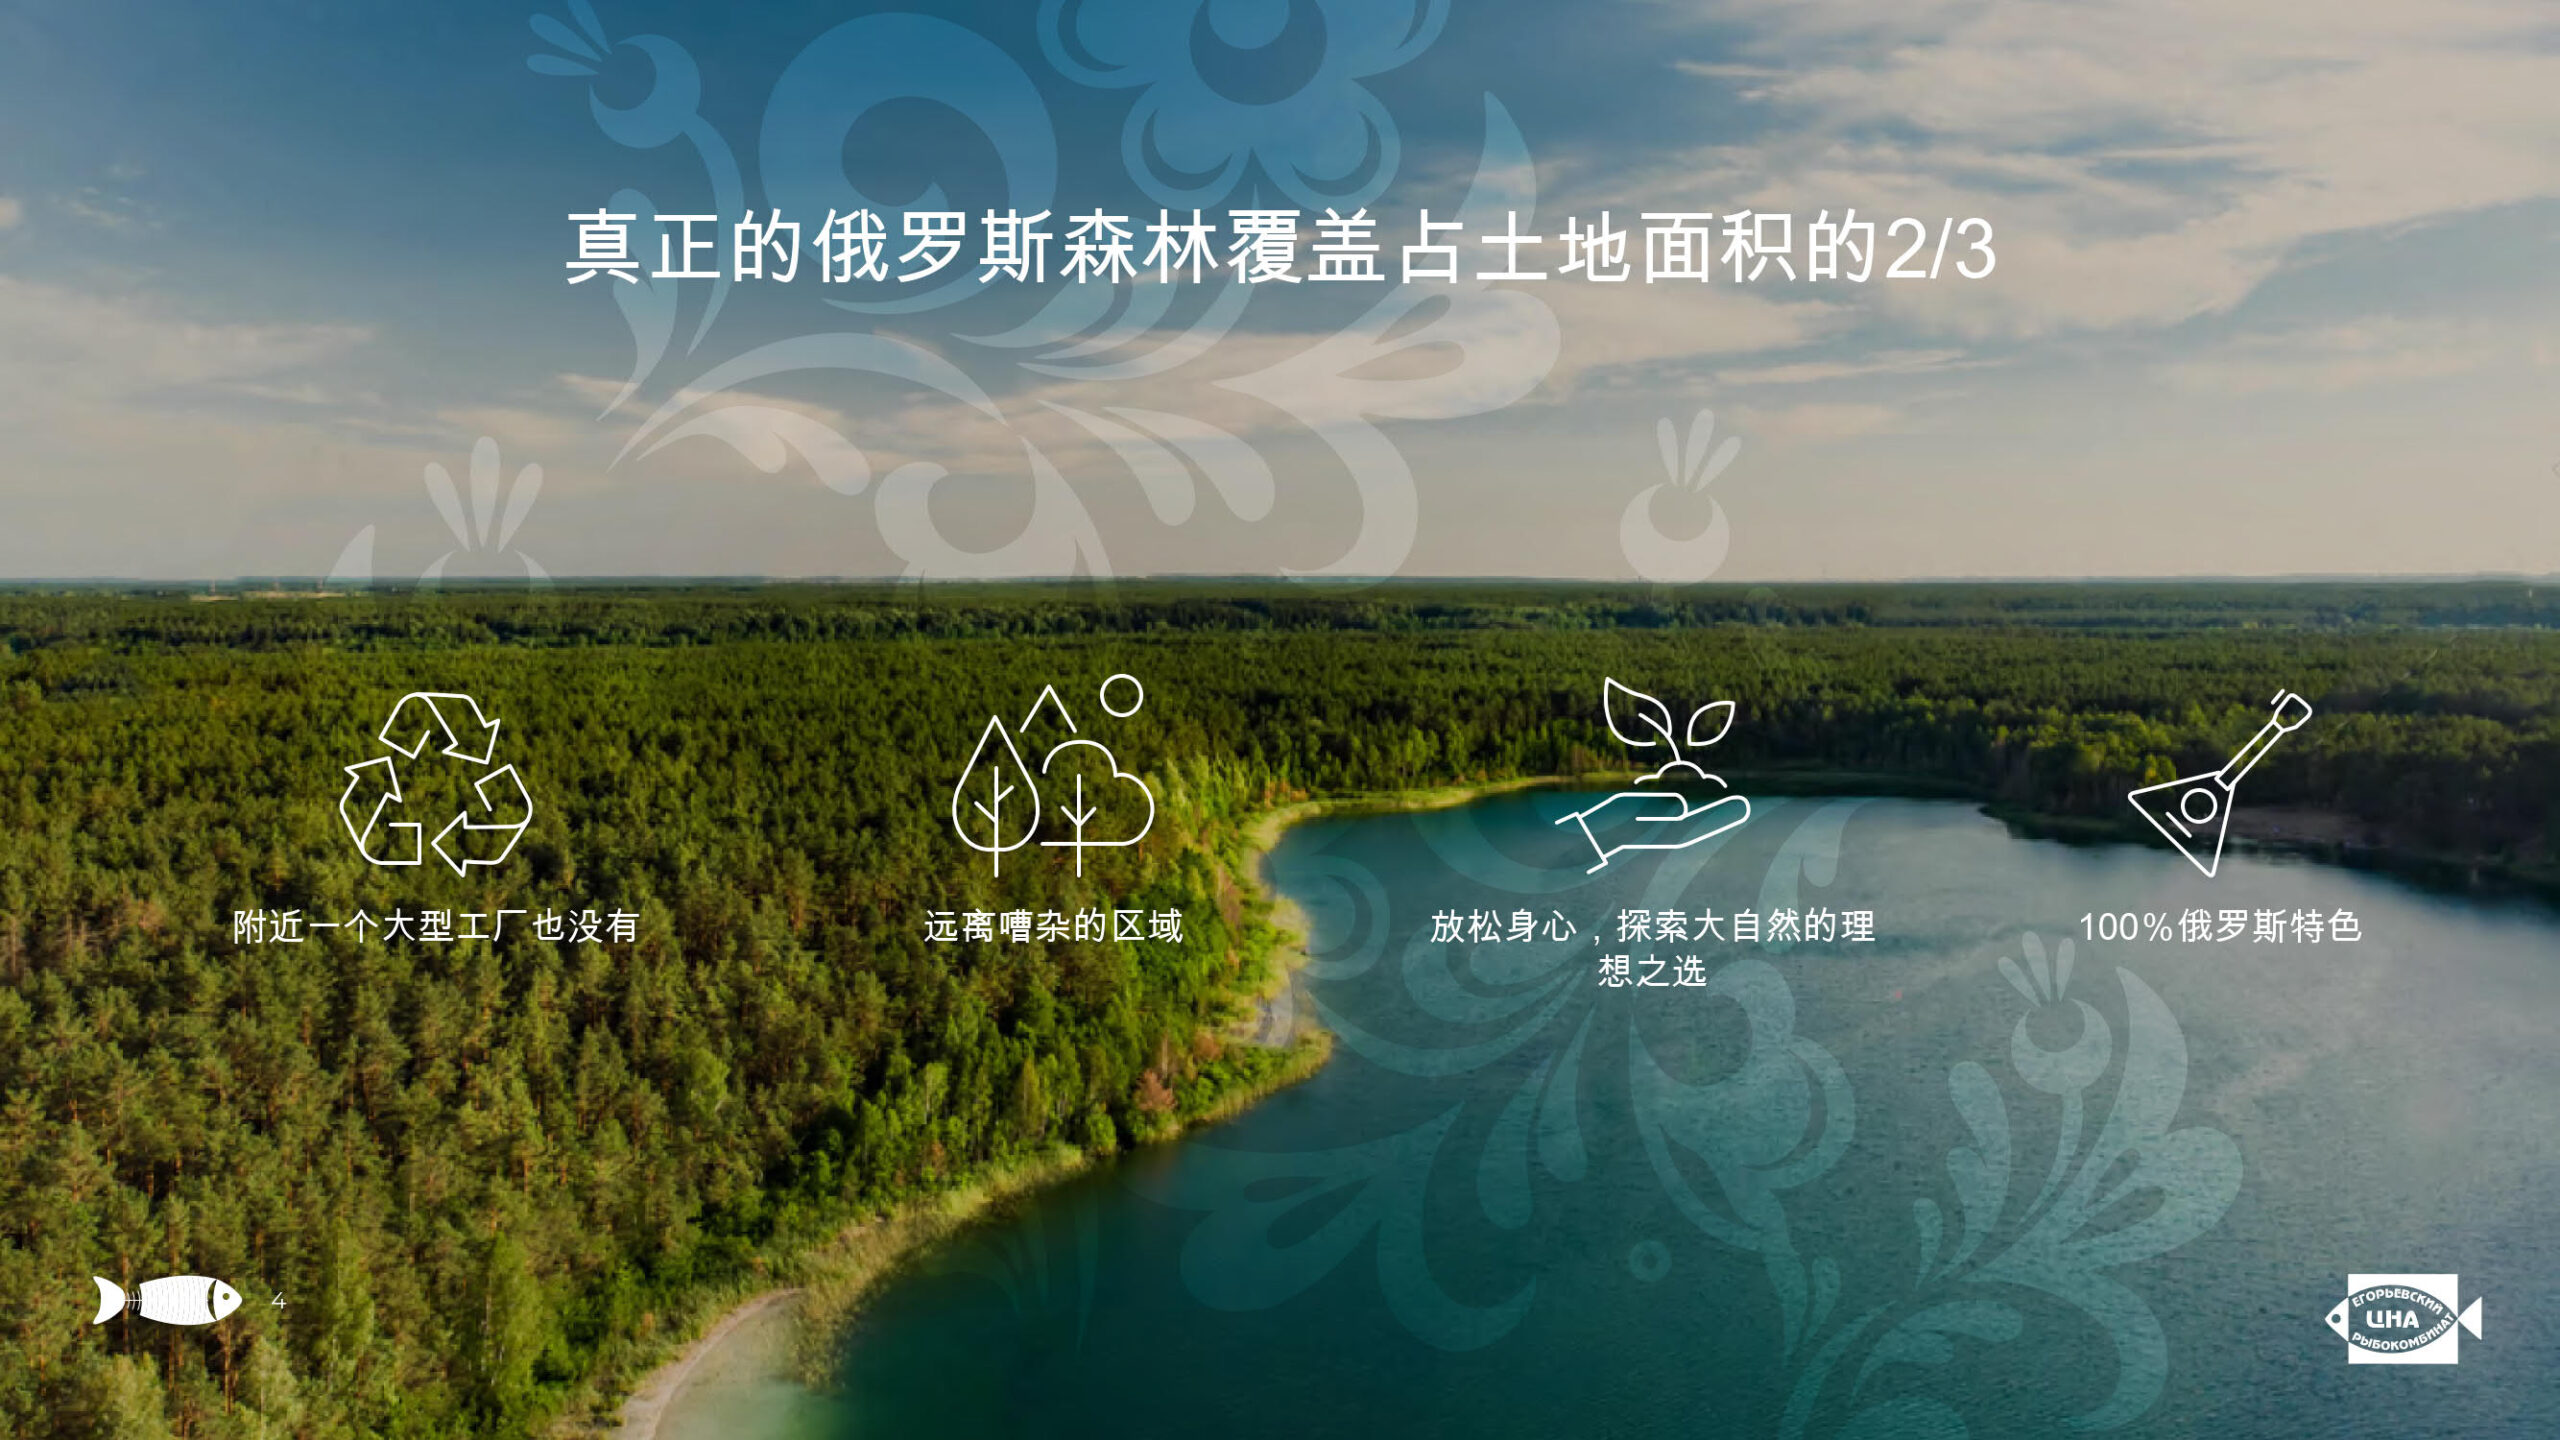 Презентация услуг «Егорьевского рыбкомбината «ЦНА» на китайском языке слайд 3